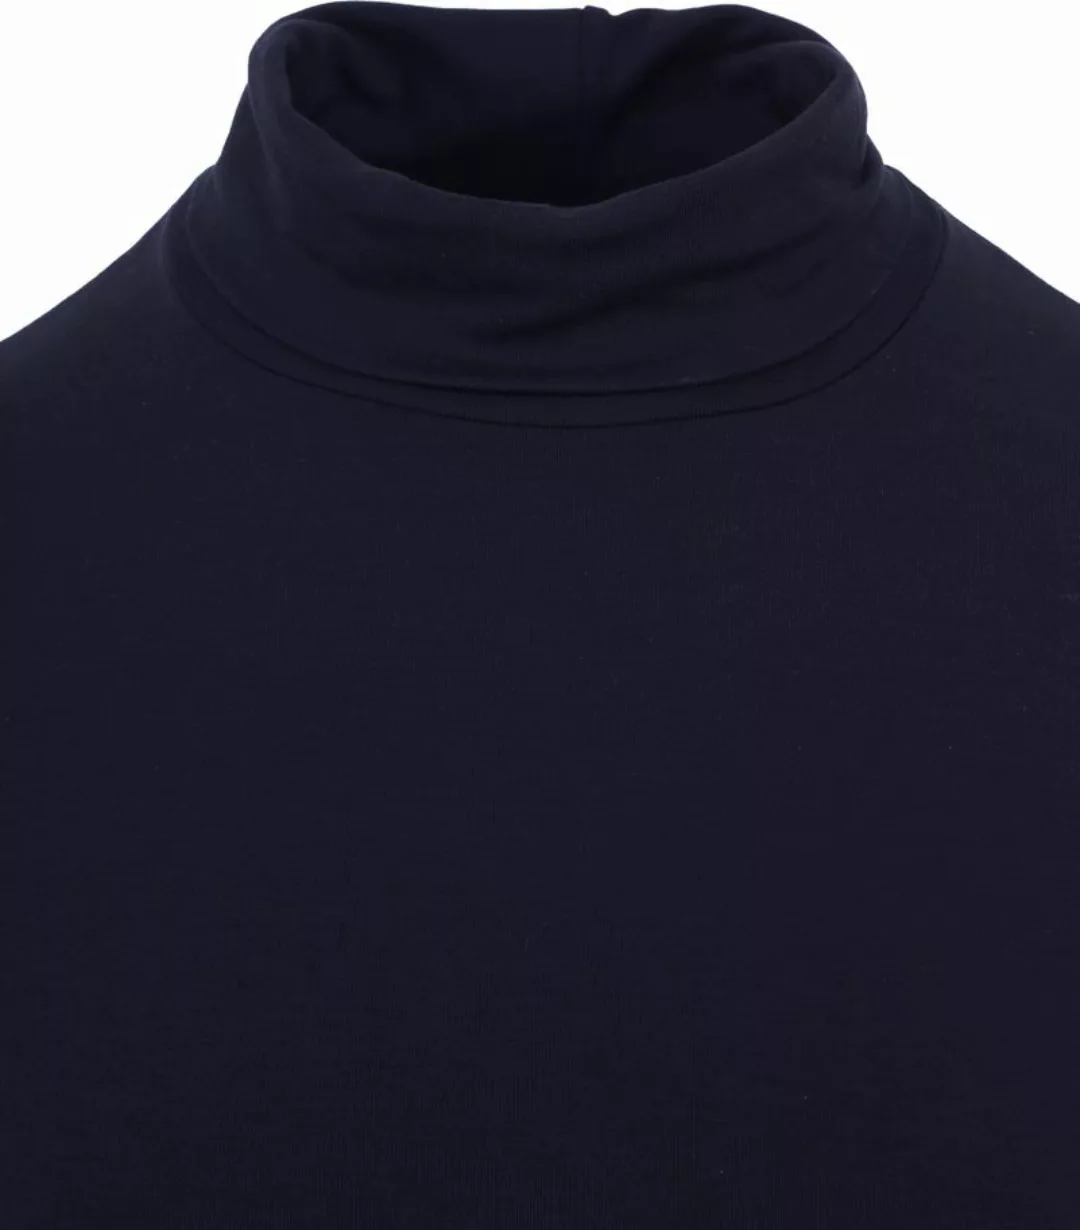 Alan Red Milton Rollkragen Longsleeve Shirt Navy - Größe S günstig online kaufen